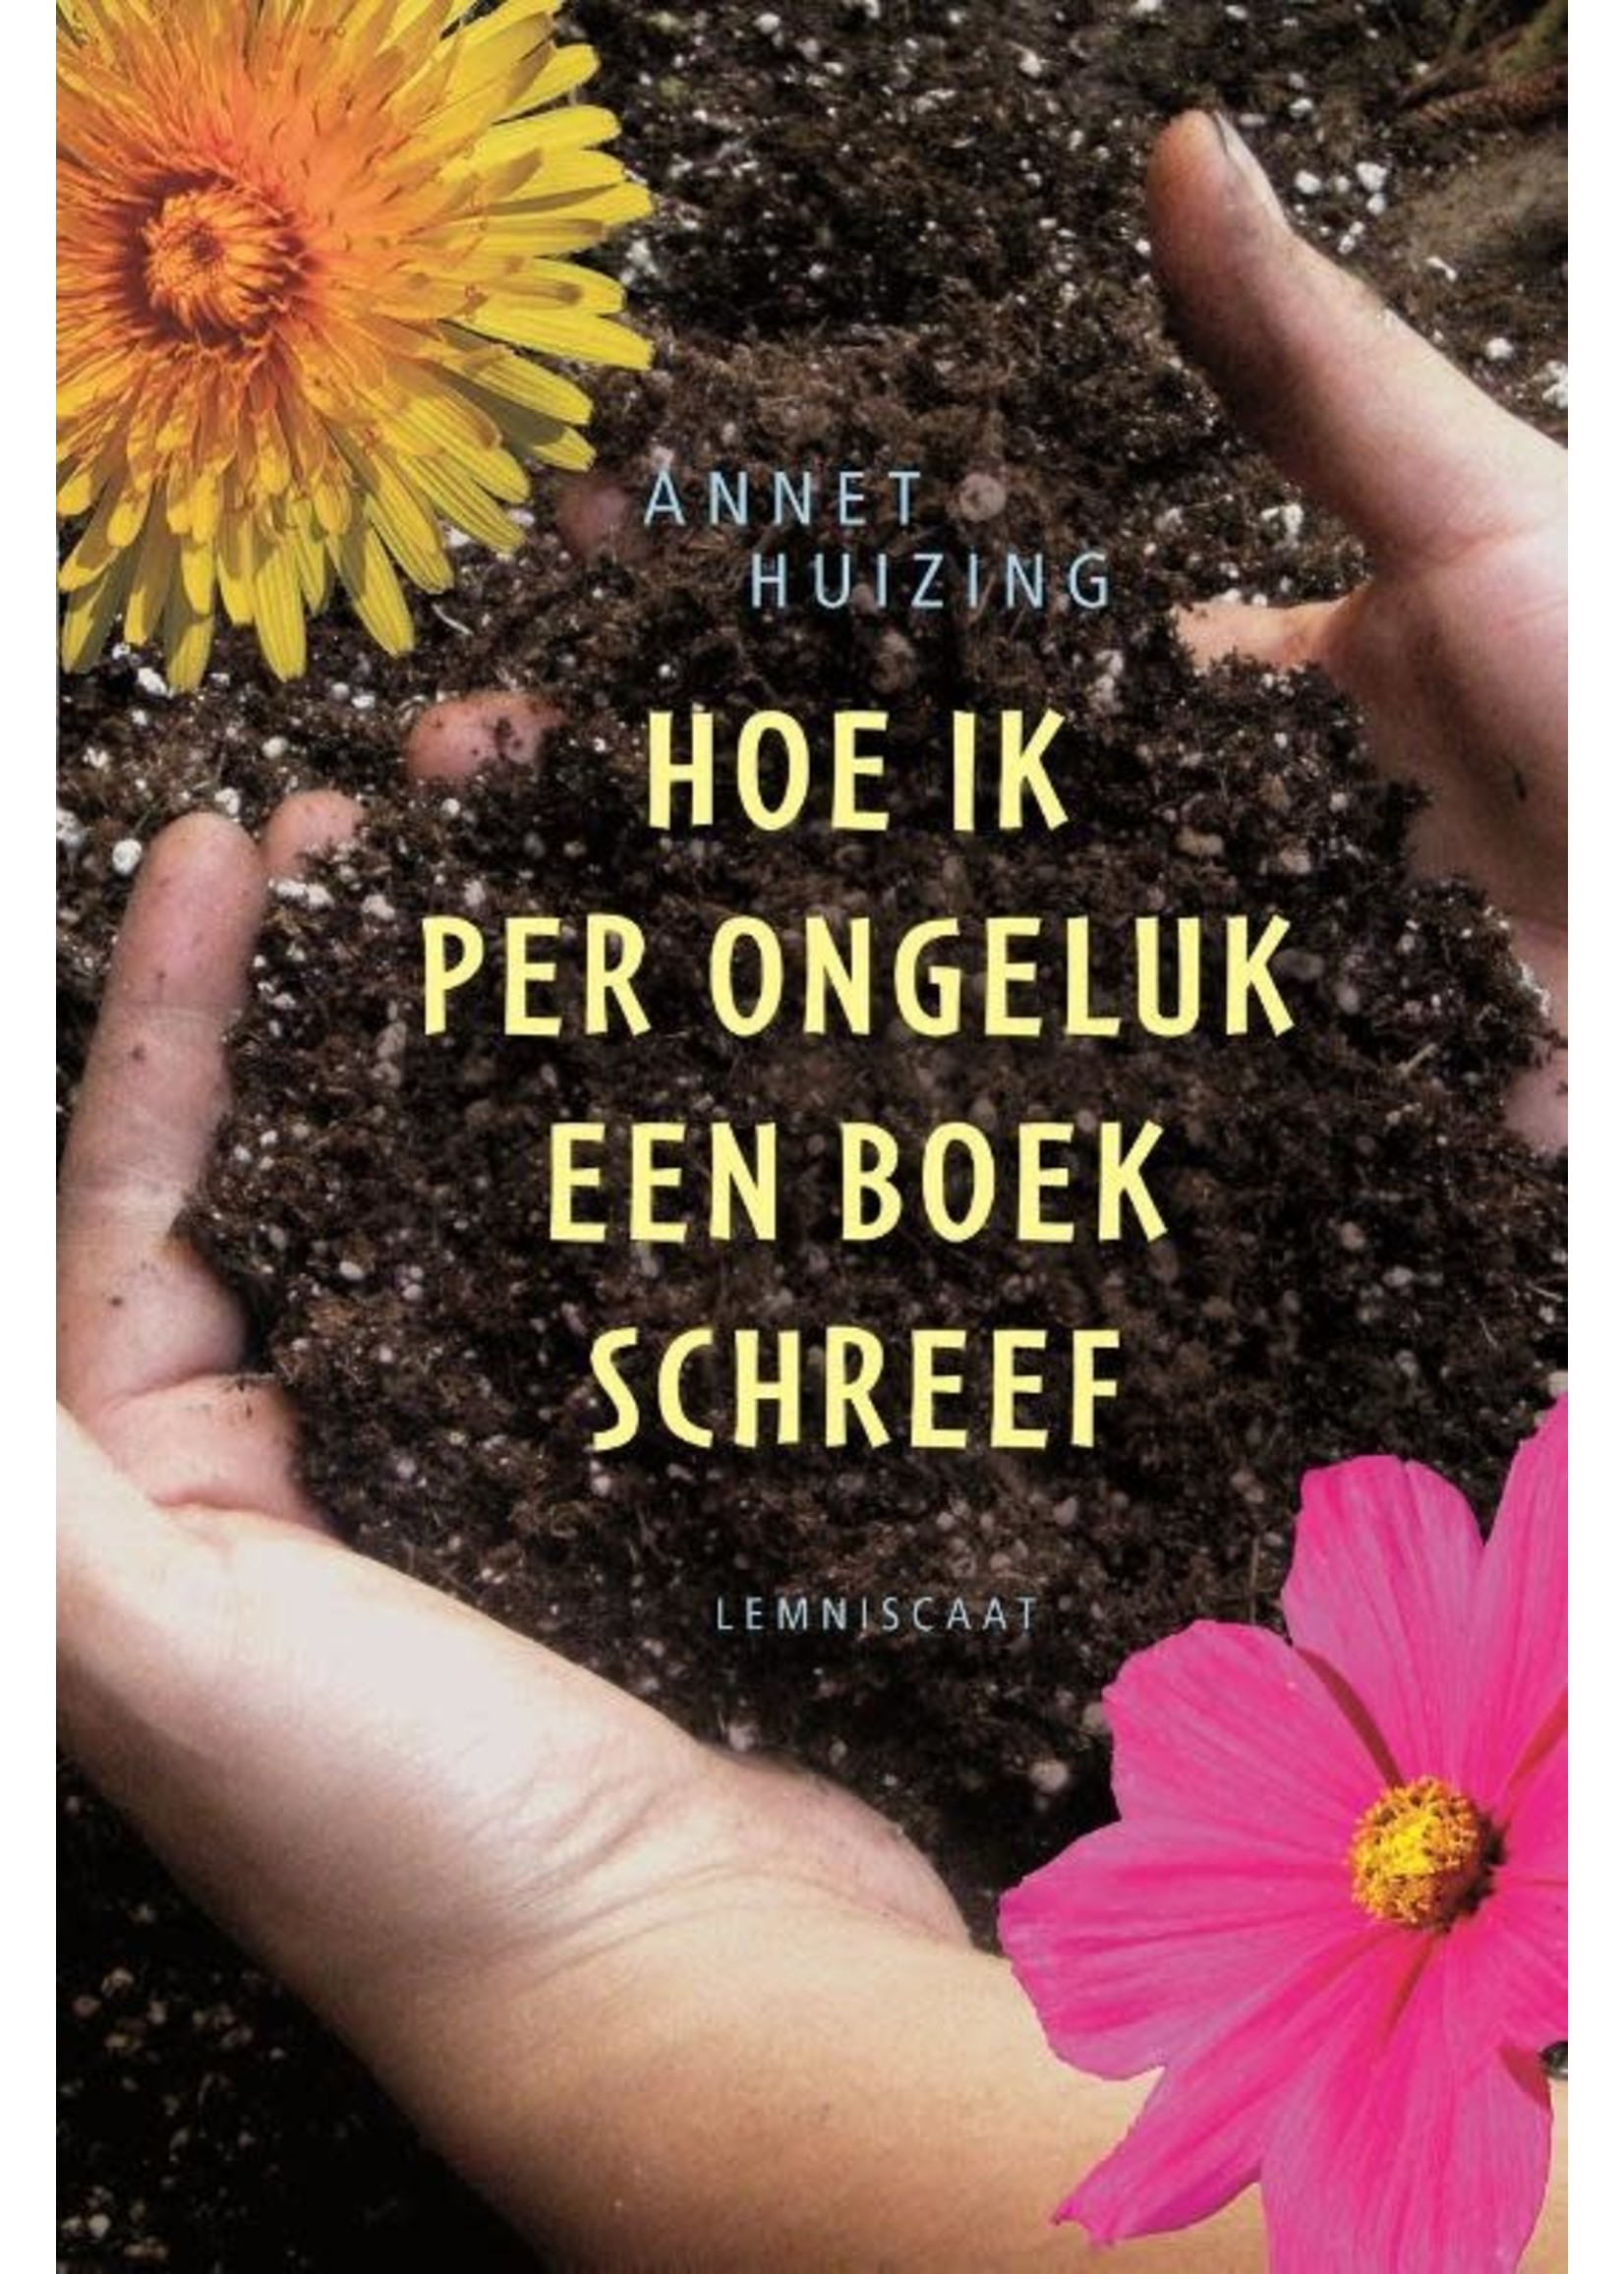 Boek Hoe ik per ongeluk een boek schreef, Annet Huizing, Lemniscaat uitgeverij, 9789047701590